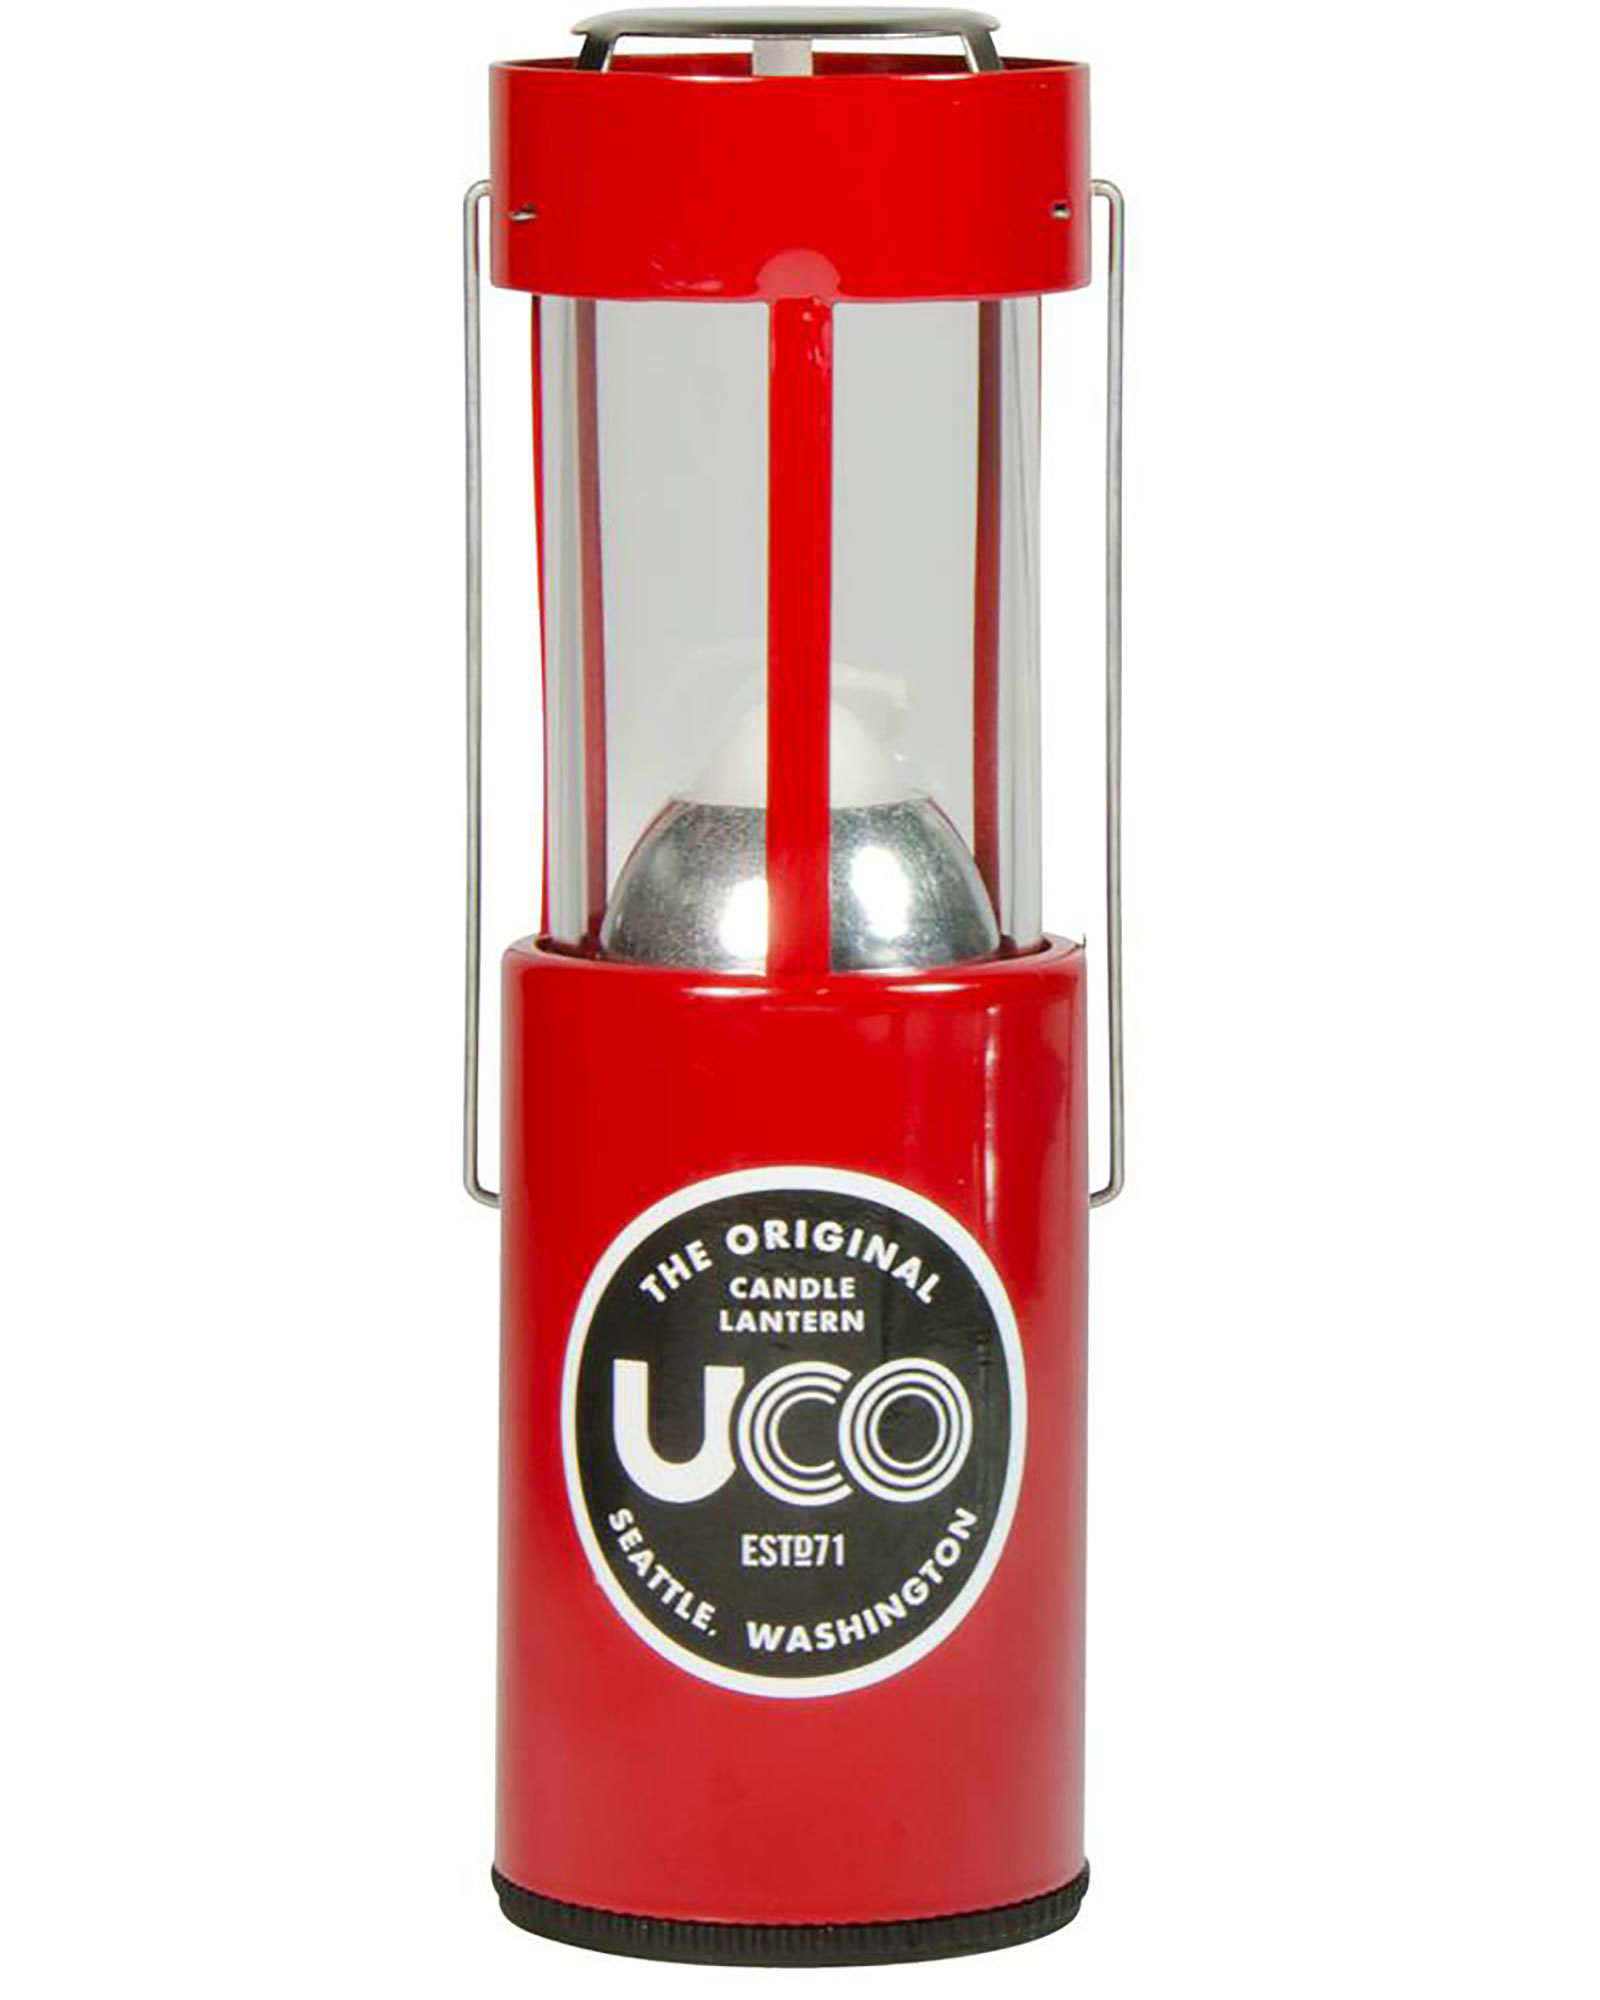 Product image of UCO Original Candle Lantern